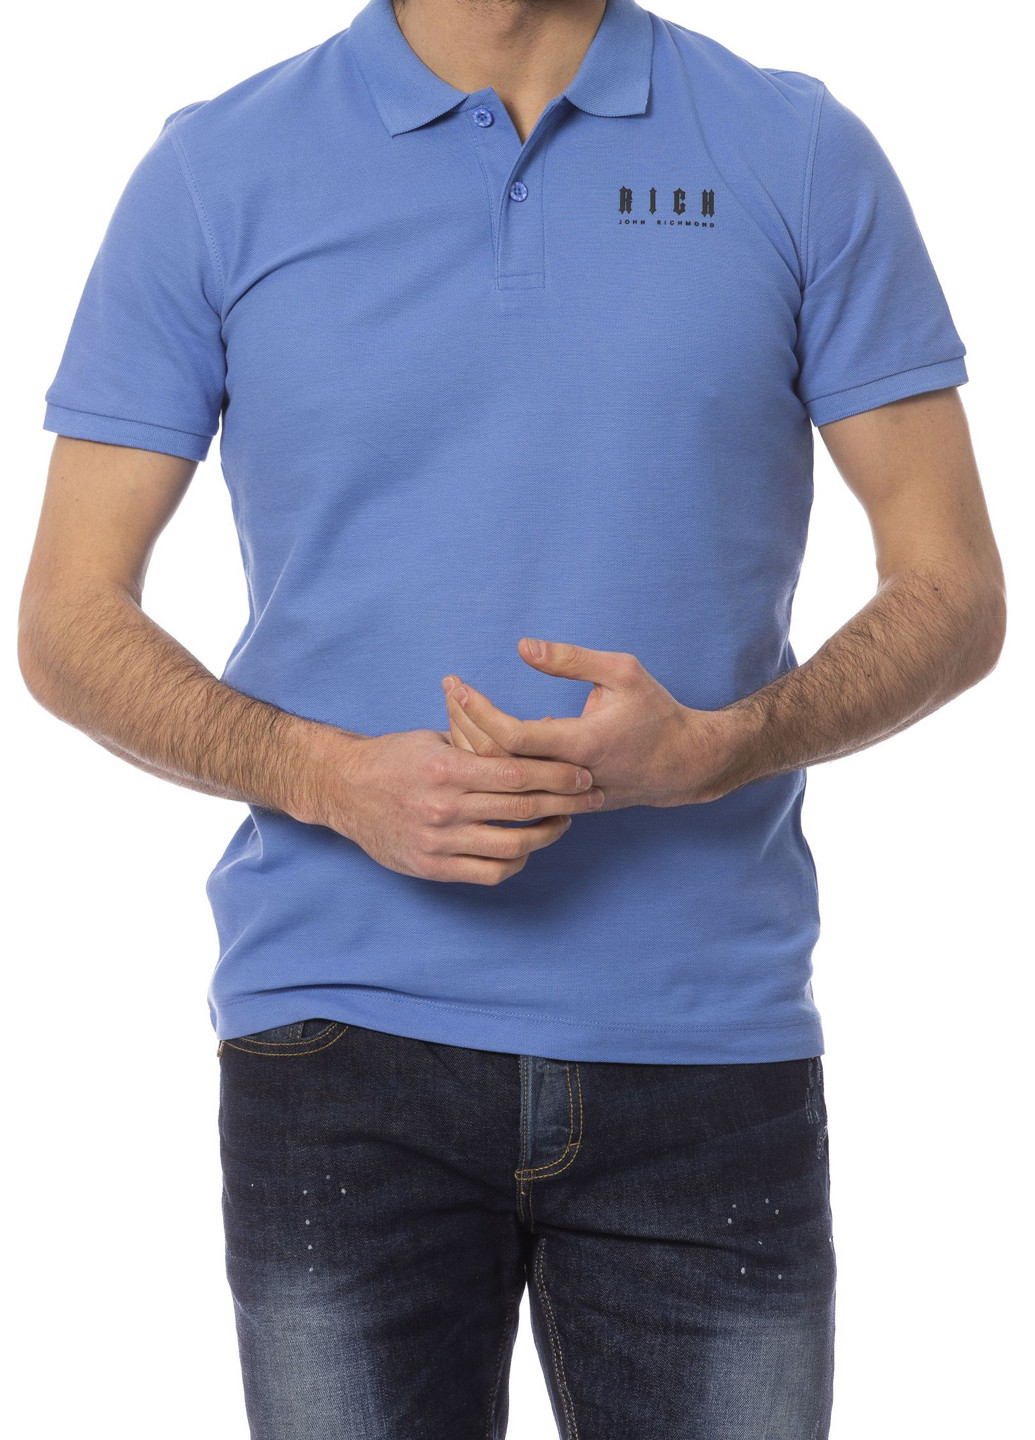 Синяя футболка-поло для мужчин Richmond с логотипом